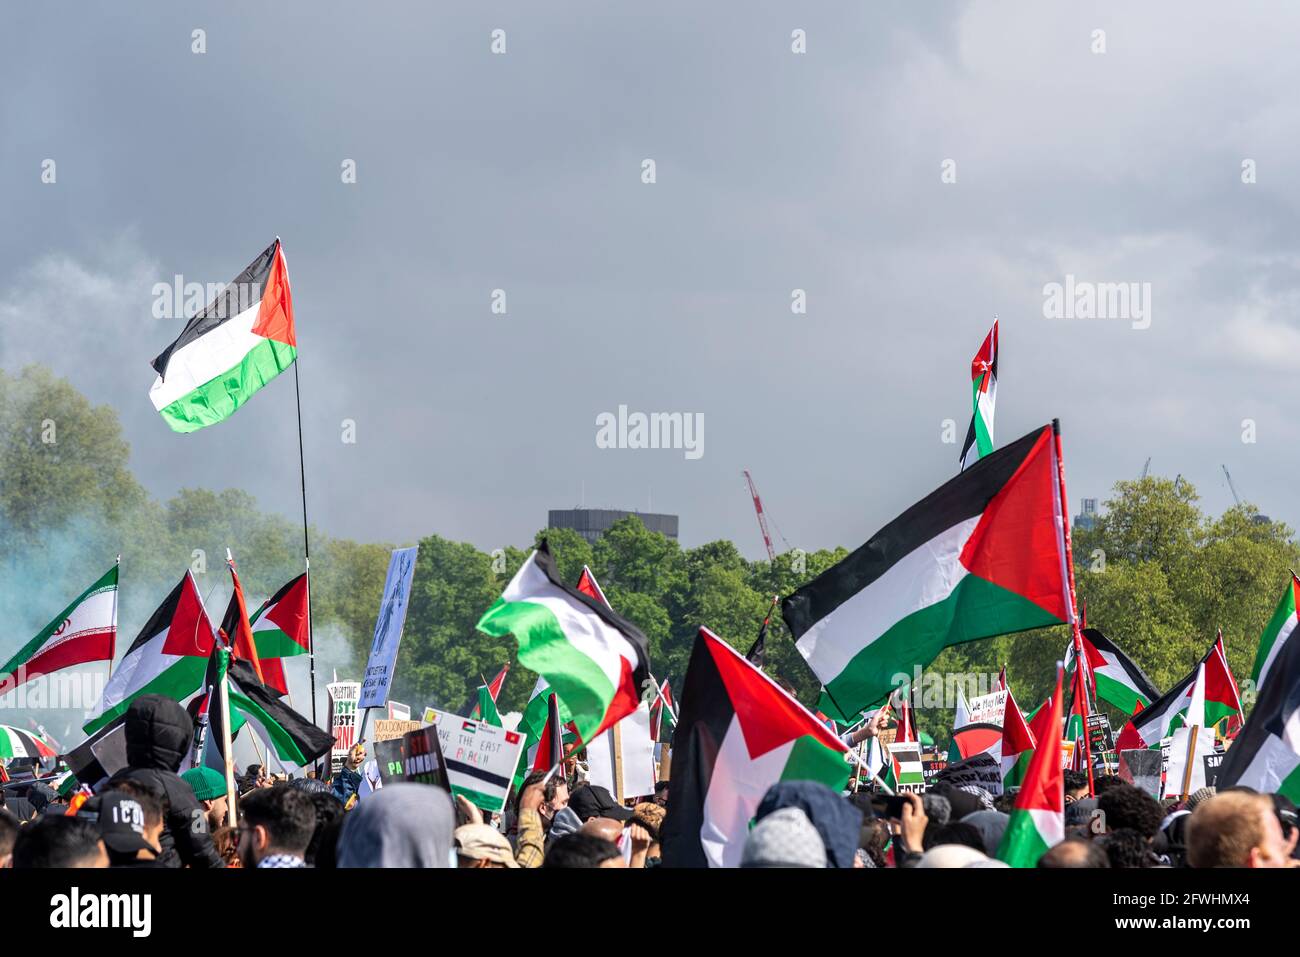 Bandiere dello stato della Palestina sventolarono durante una protesta ad Hyde Park, Londra, Regno Unito. Protestare contro le aree occupate da Israele. libera Palestina marcia Foto Stock